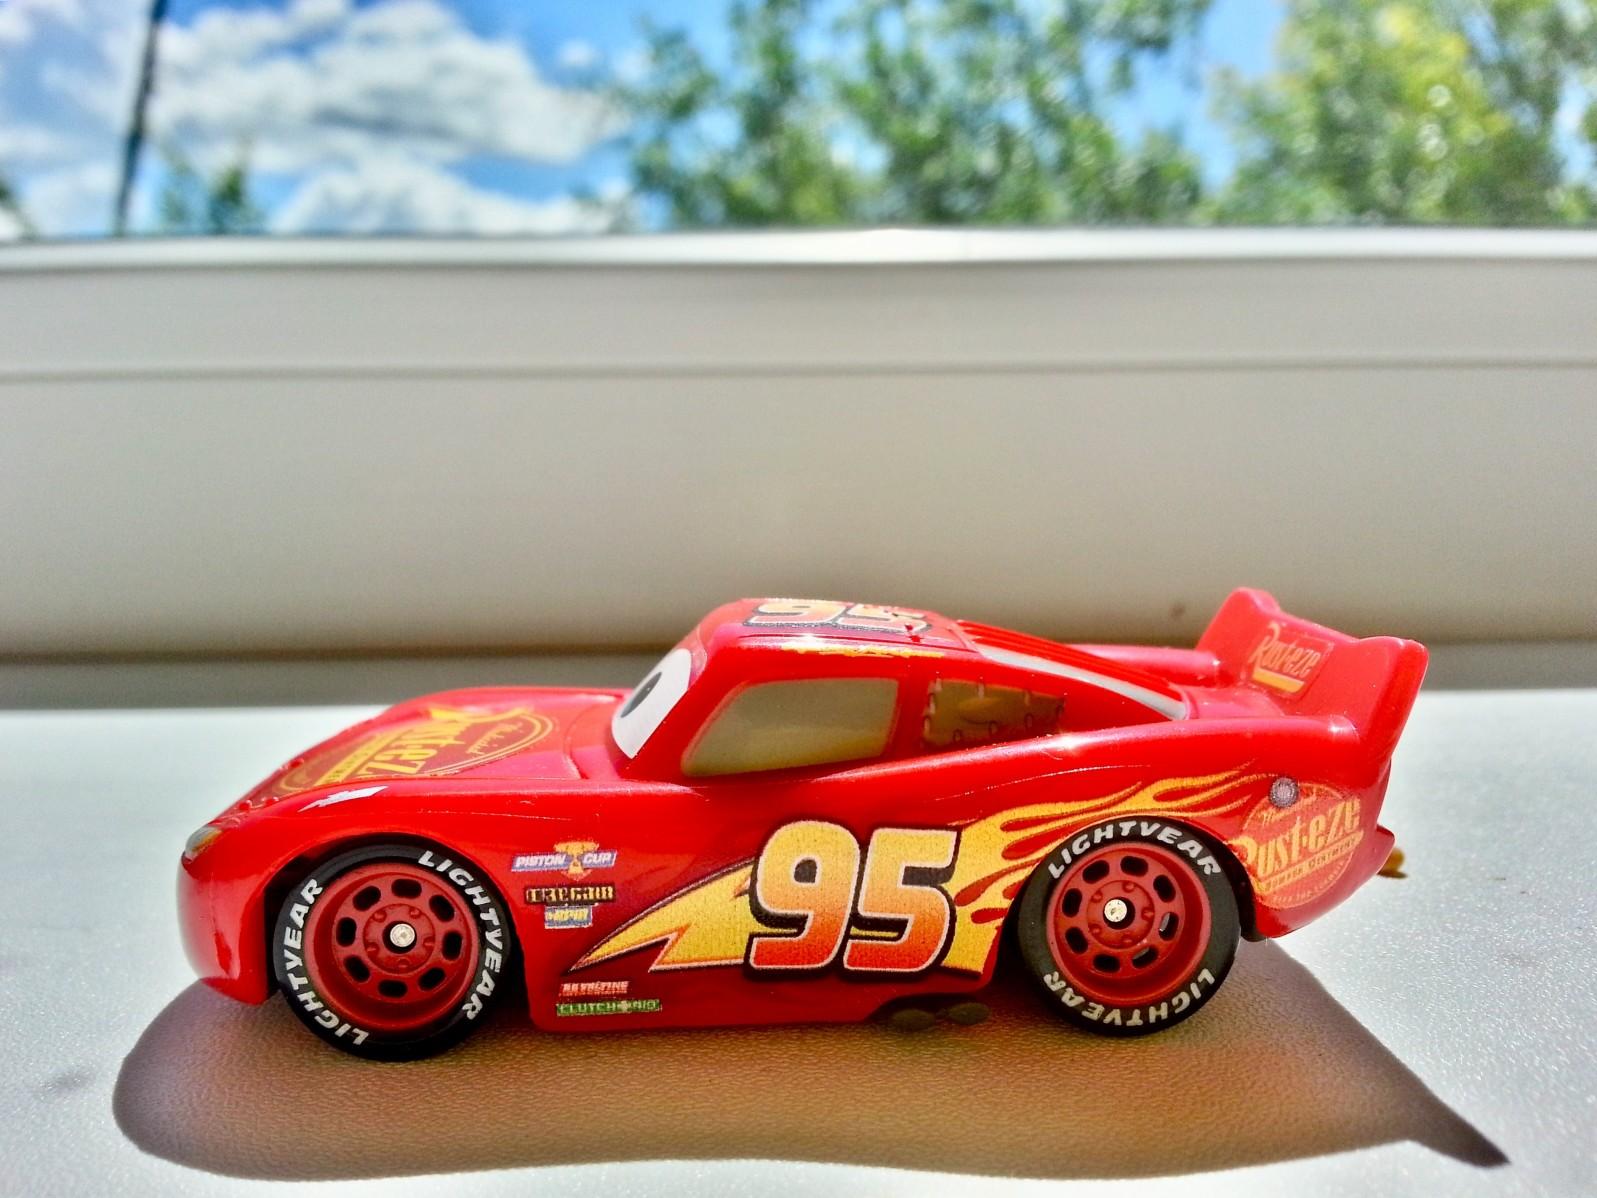 A Lightning McQueen toy 